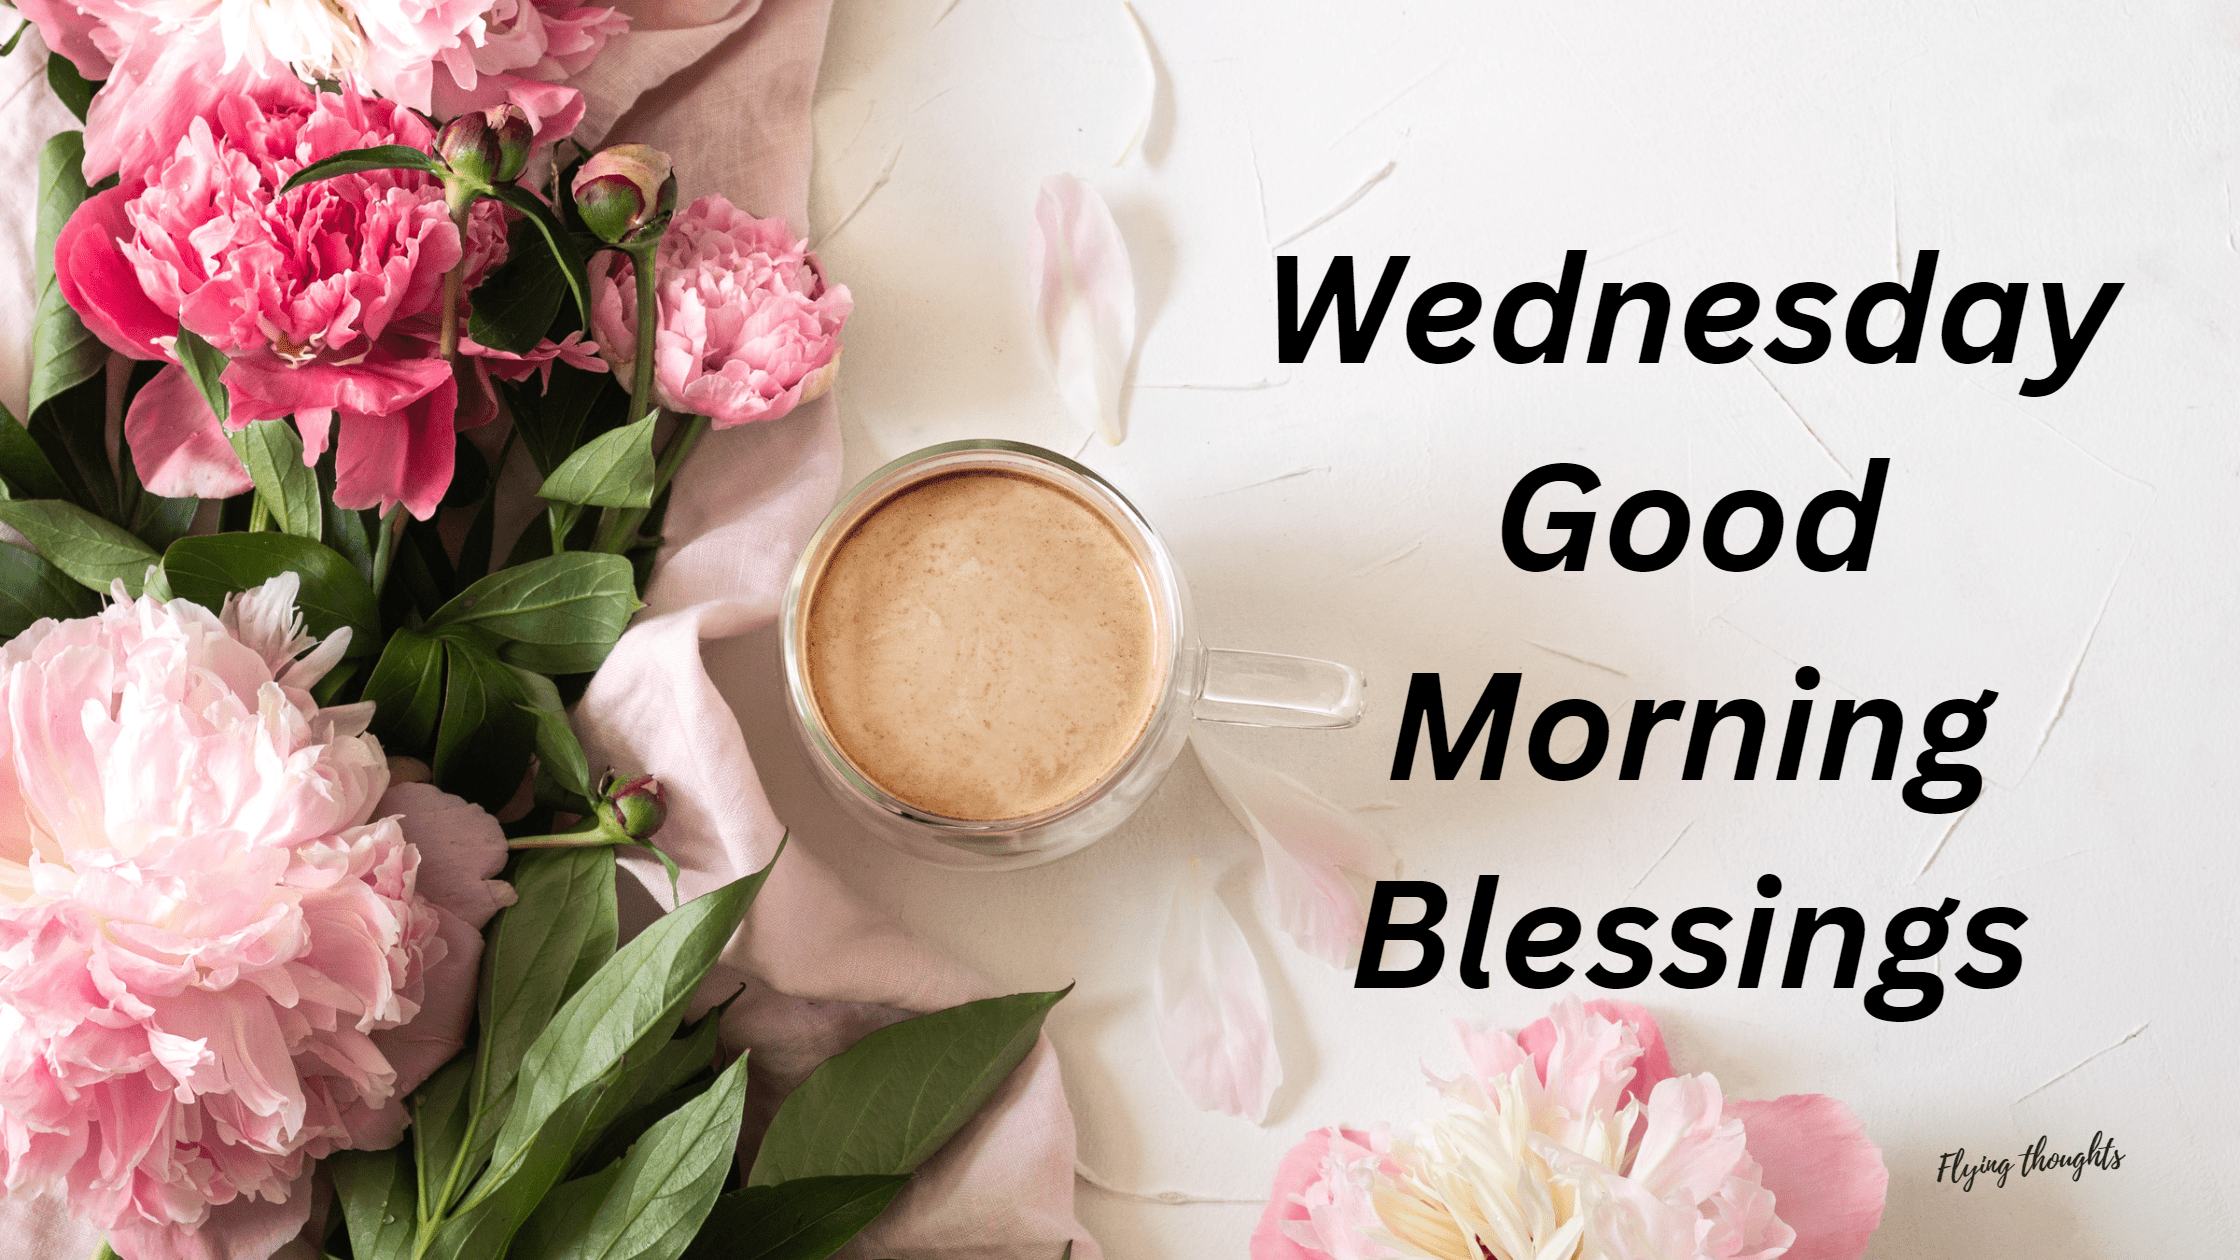 Wednesday Good Morning Blessings